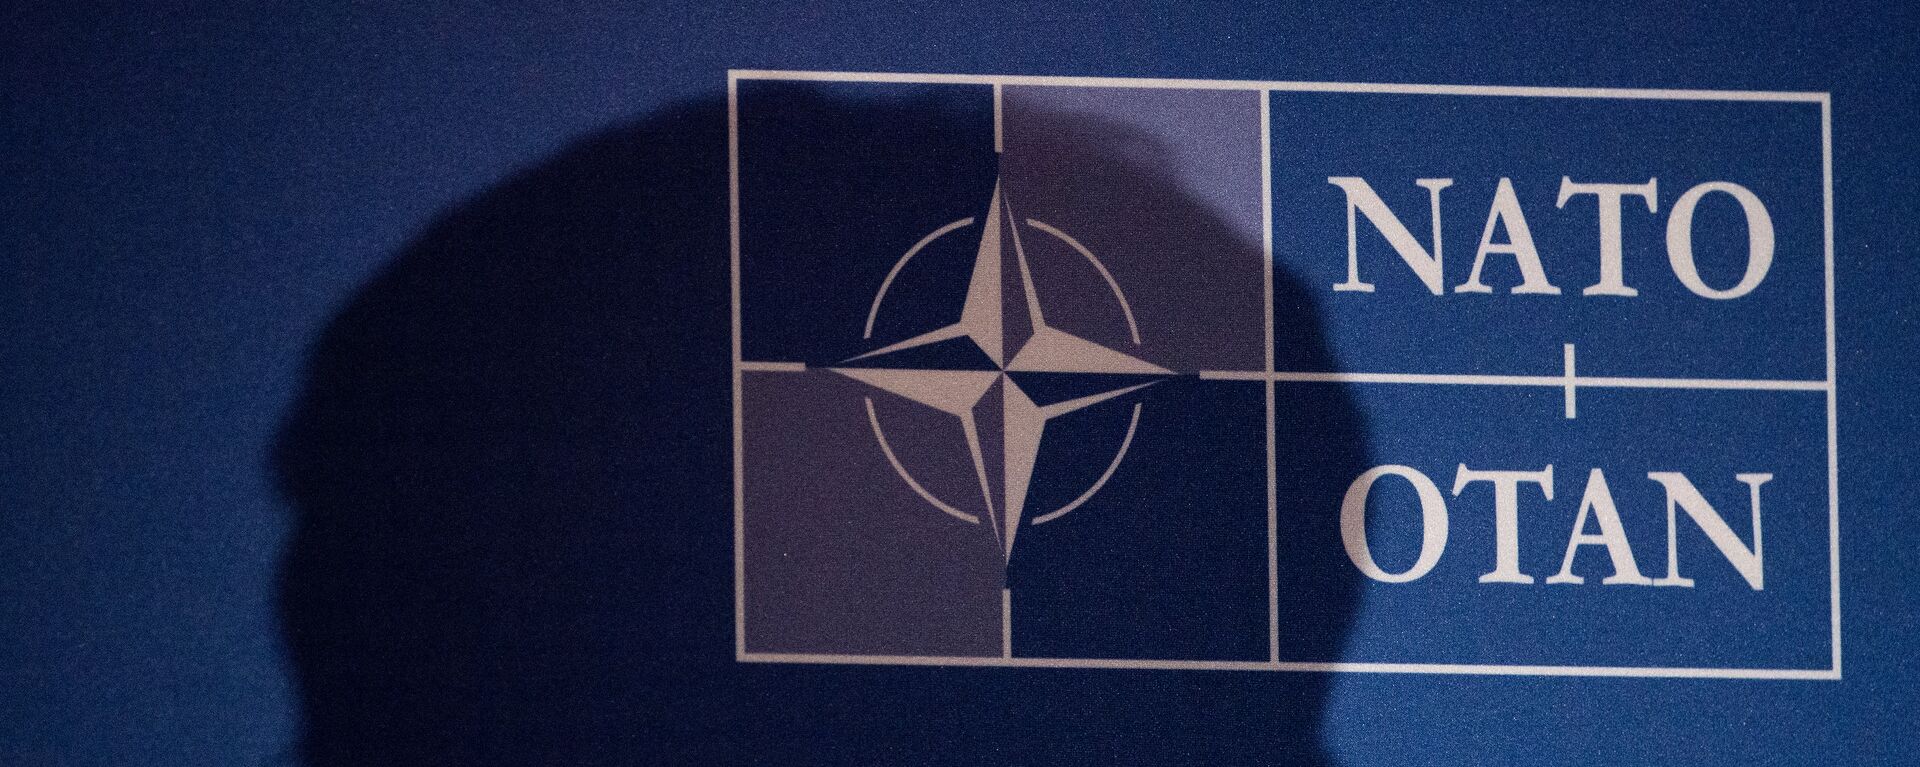 Logo de la OTAN - Sputnik Mundo, 1920, 22.12.2021